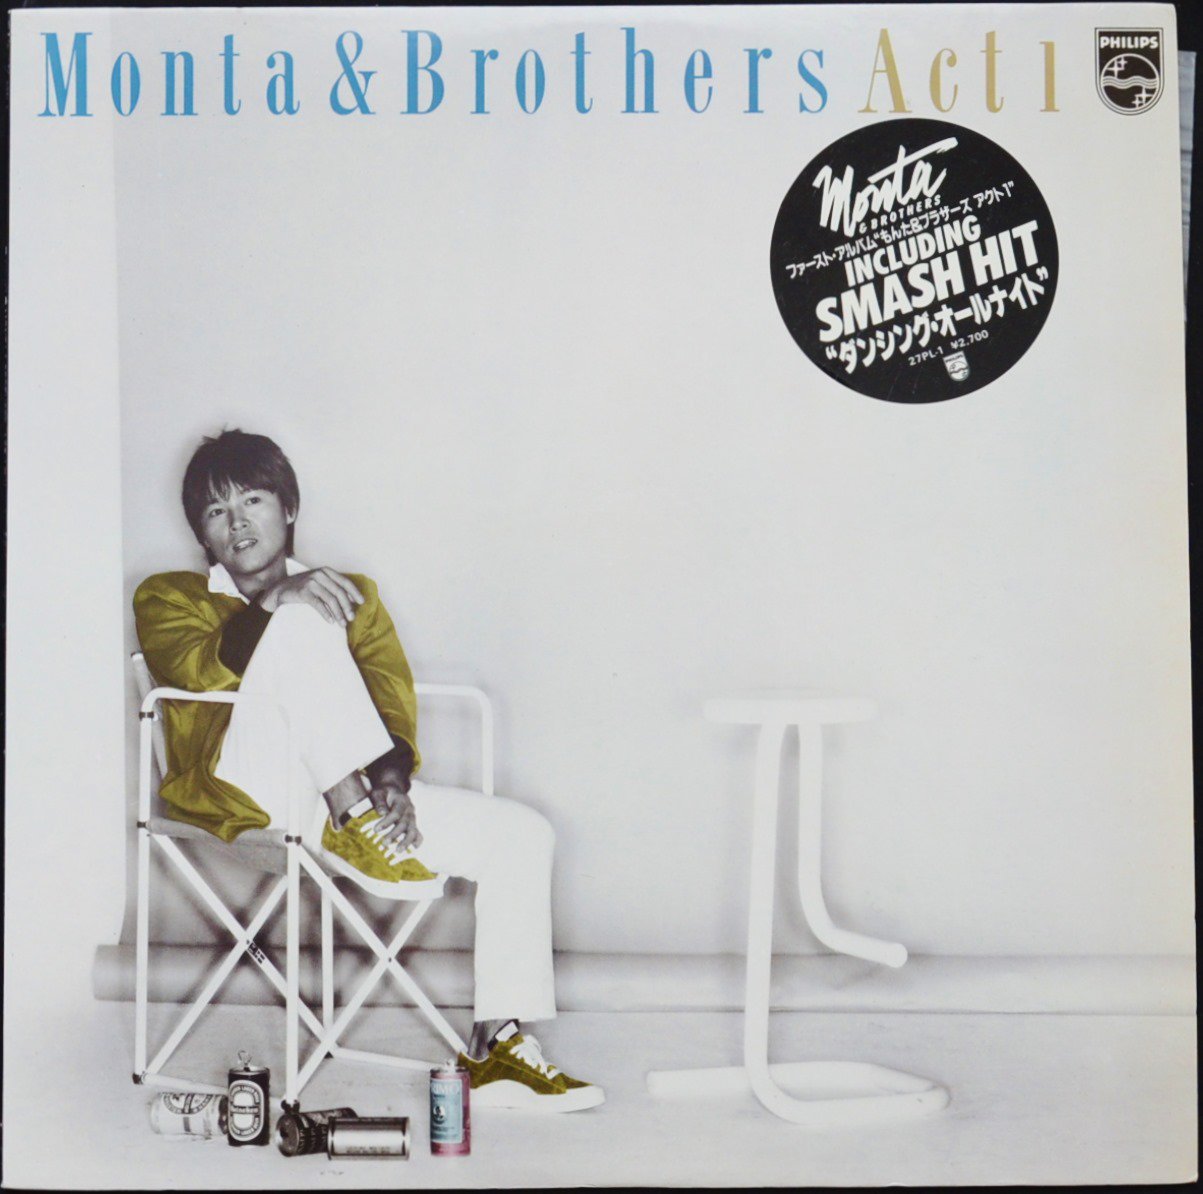 もんた & ブラザーズ MONTA & BROTHERS / アクト 1 ACT 1 (LP)